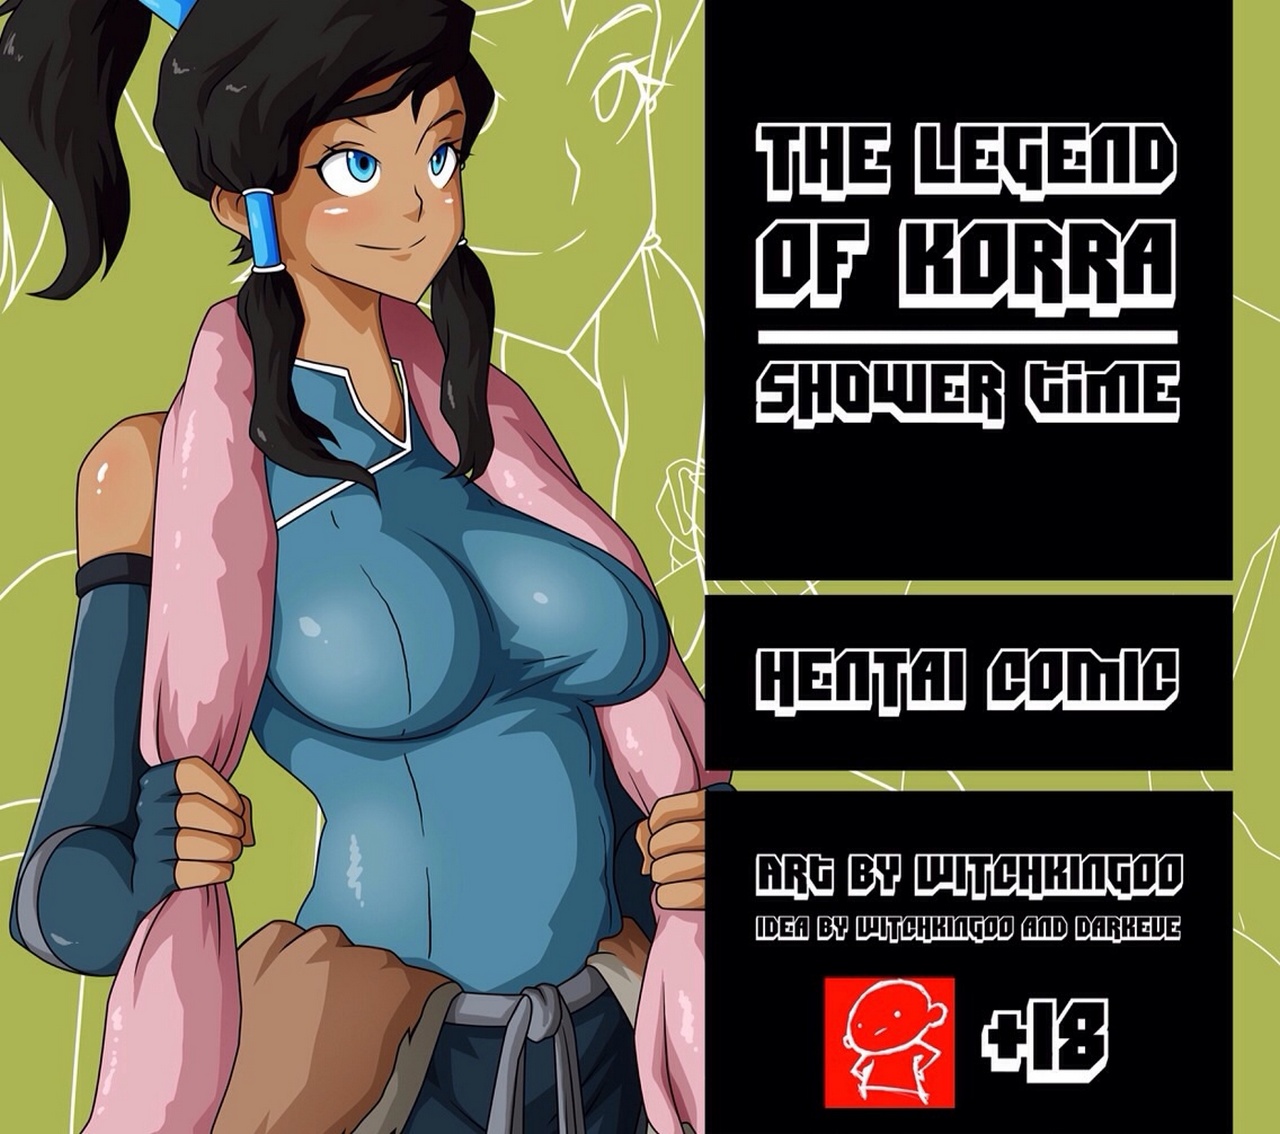 The Legend Of Korra 1 - Shower Time